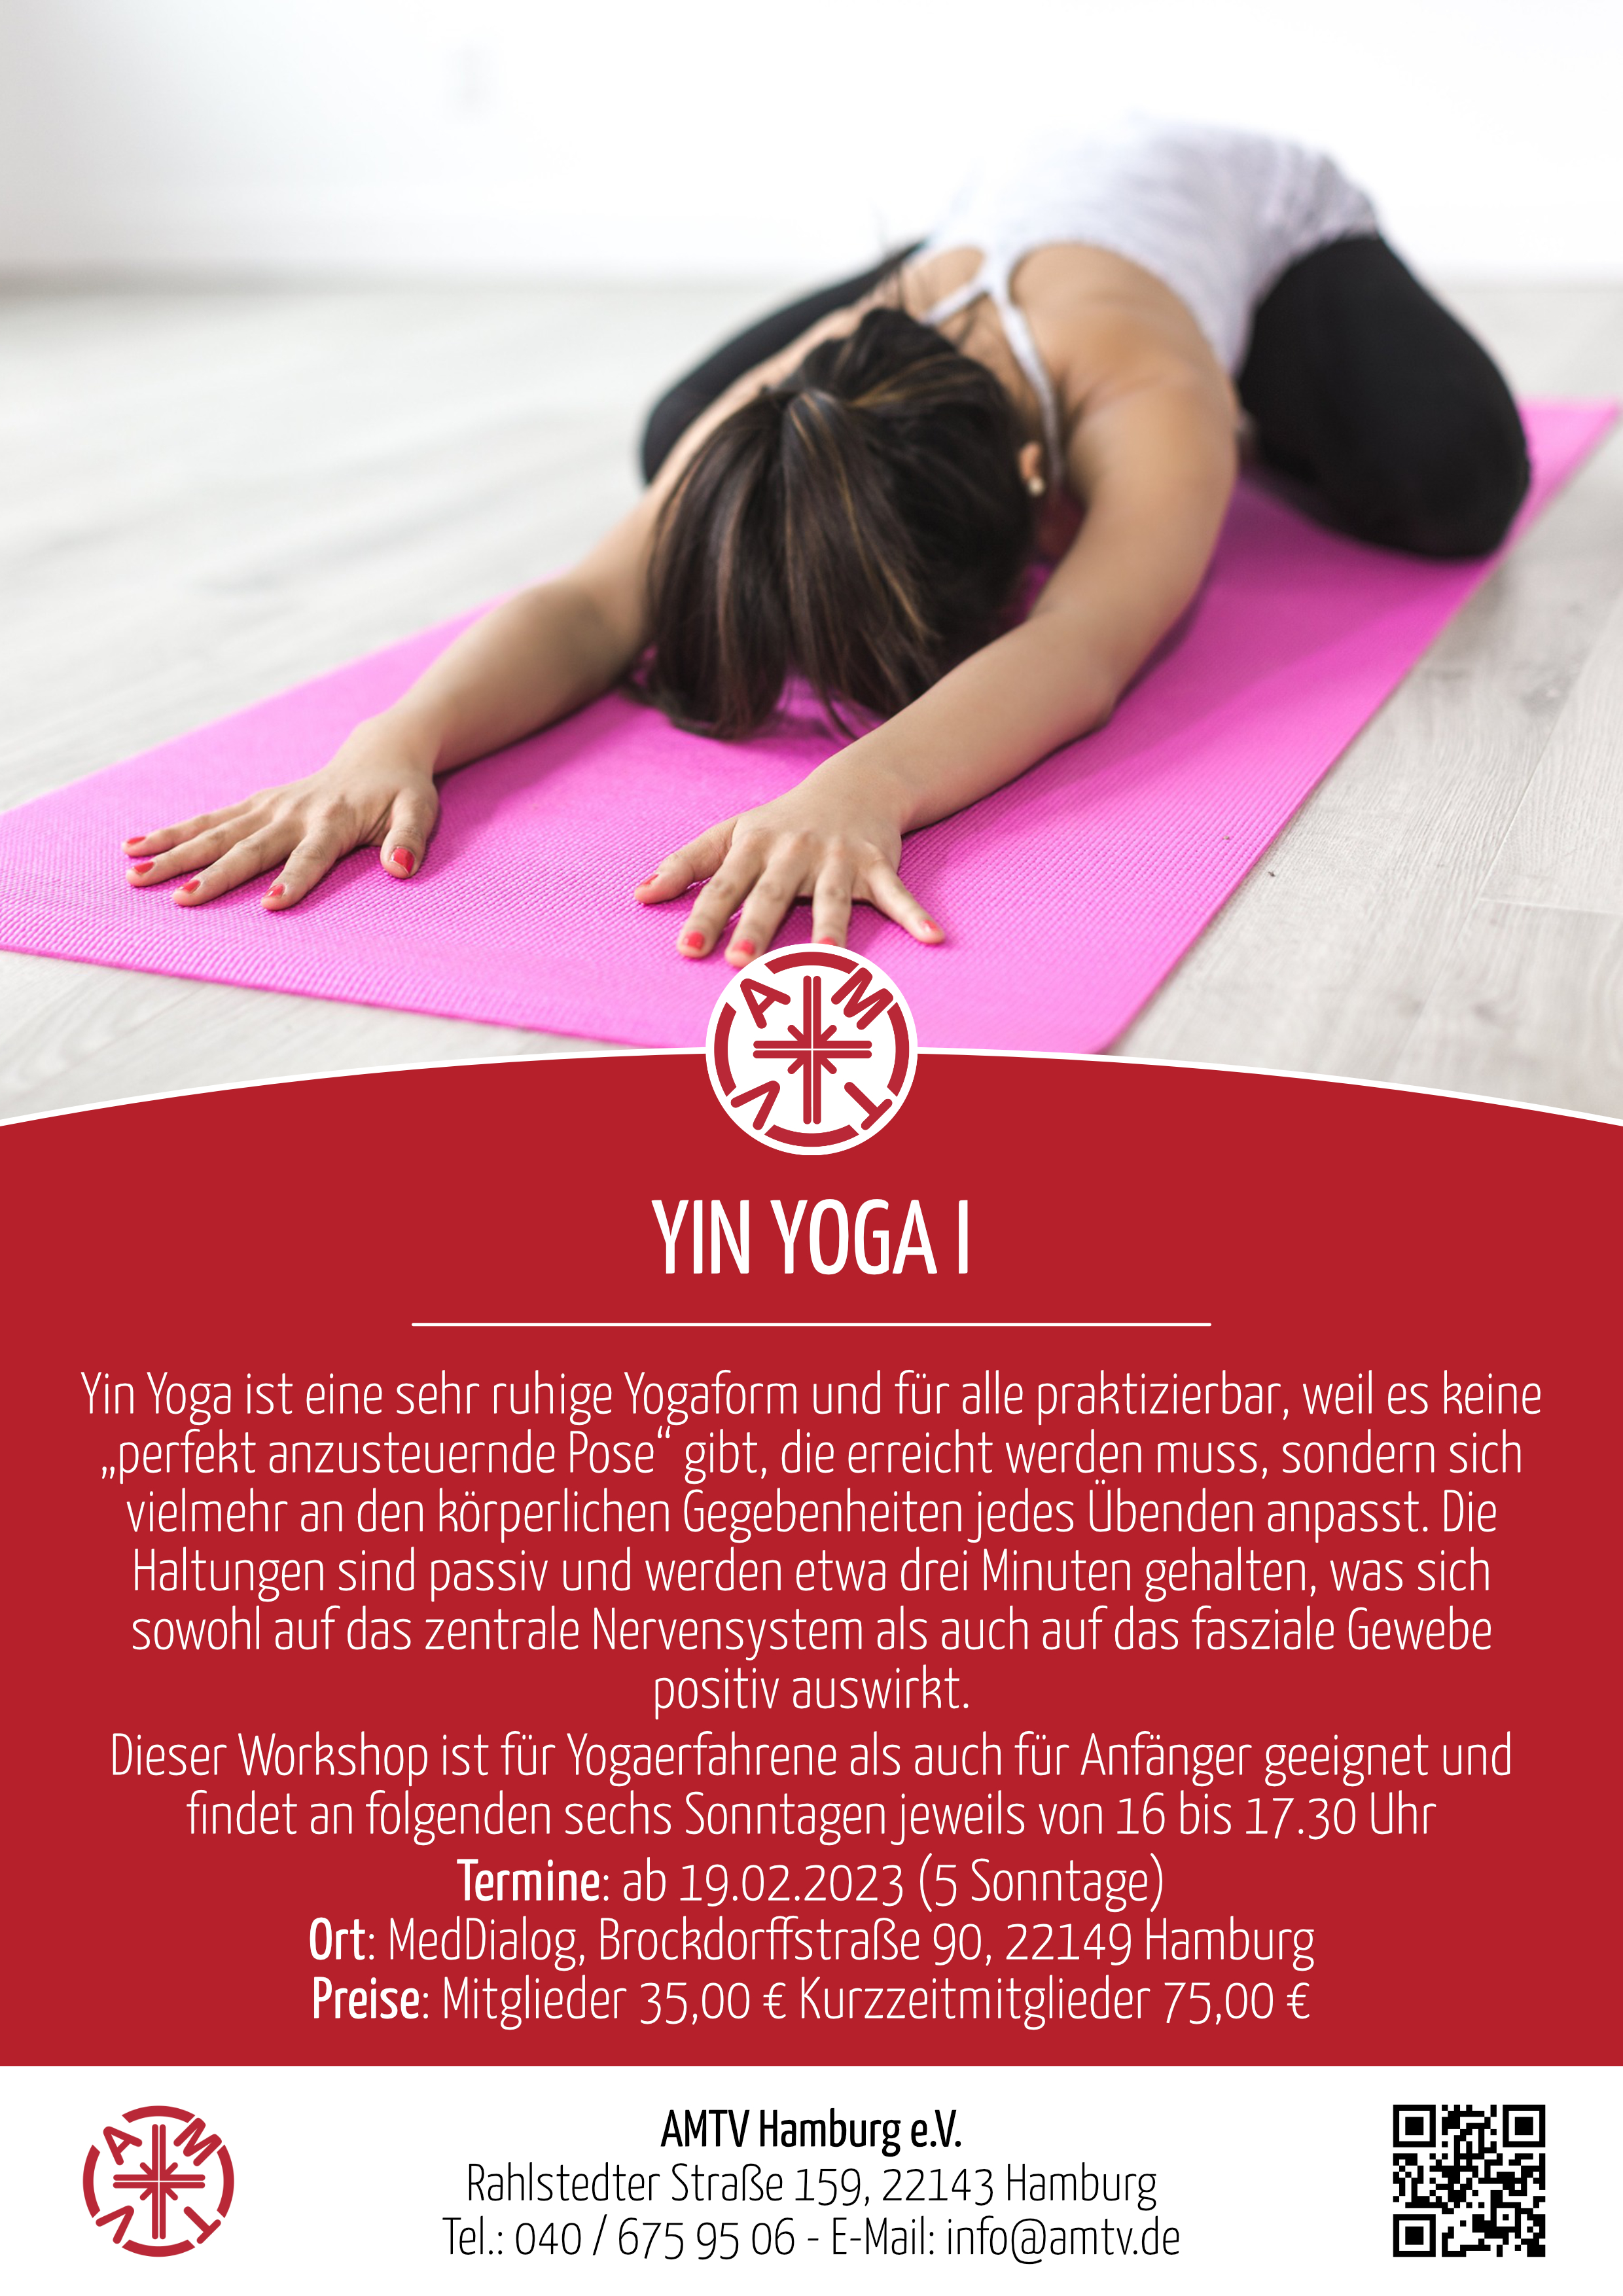 Yin Yoga I Februar 2023 